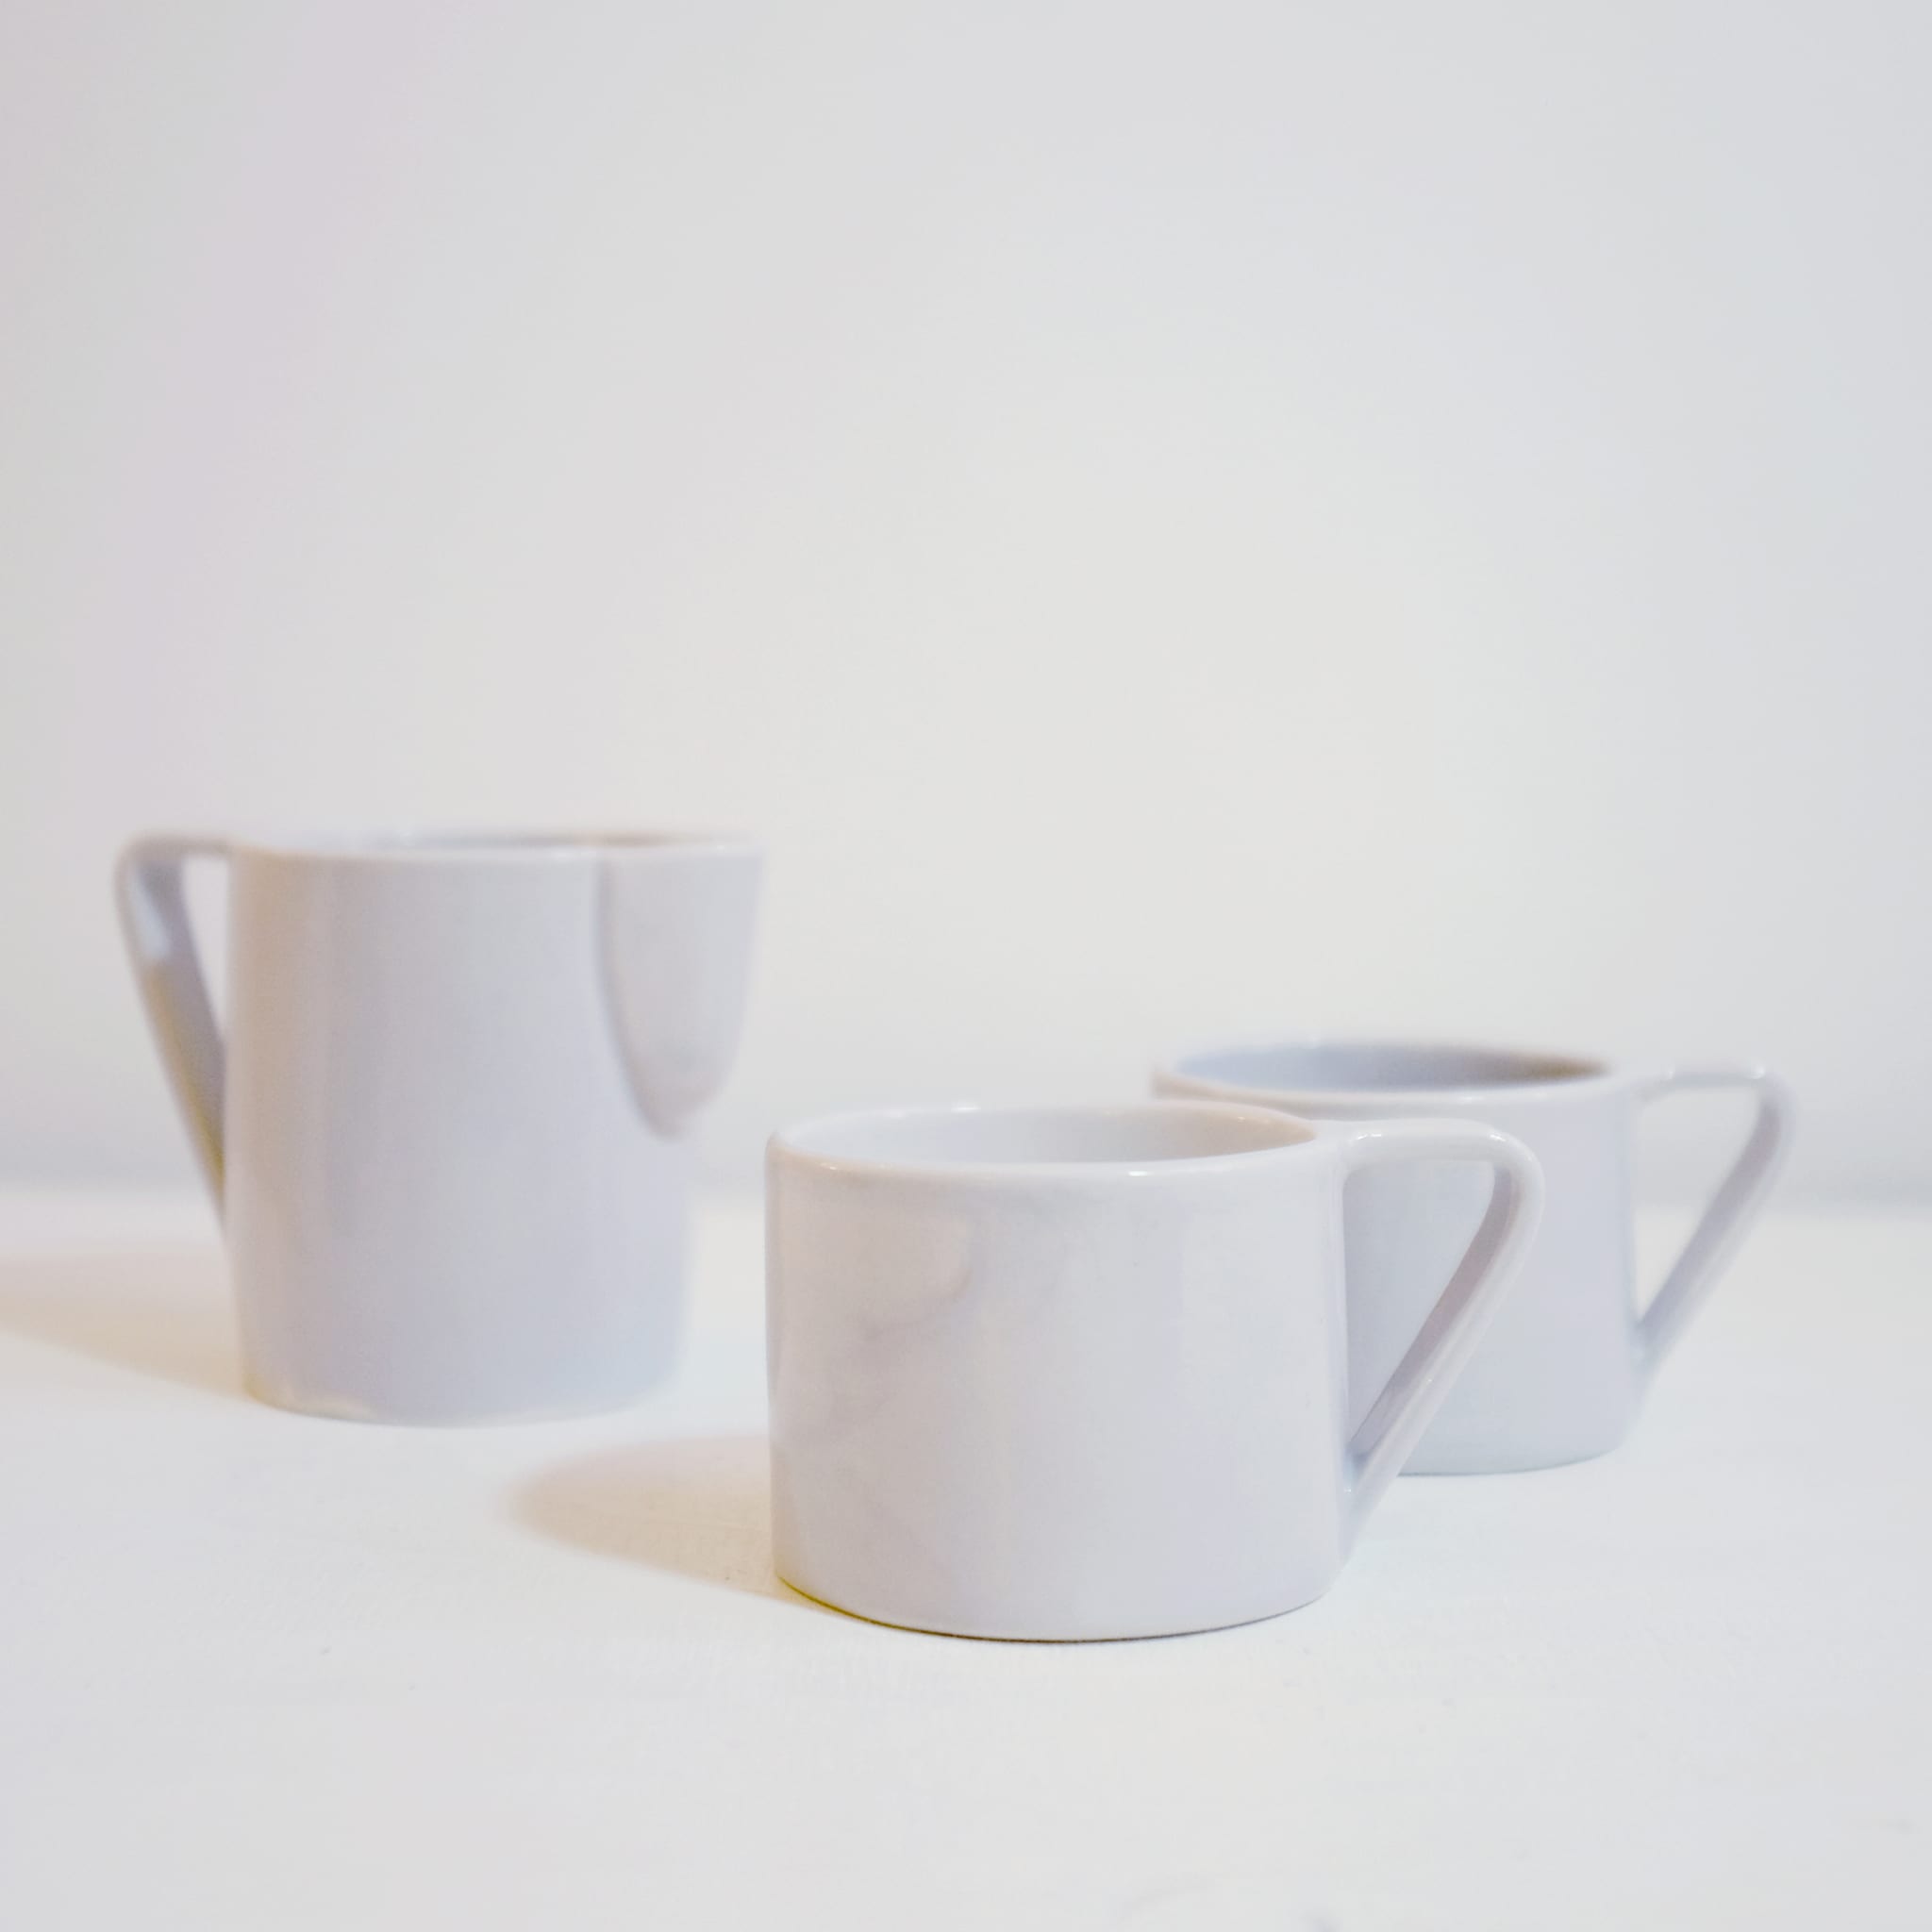 Milano Nebbia Set of 4 Cappuccino cups - Alternative view 1